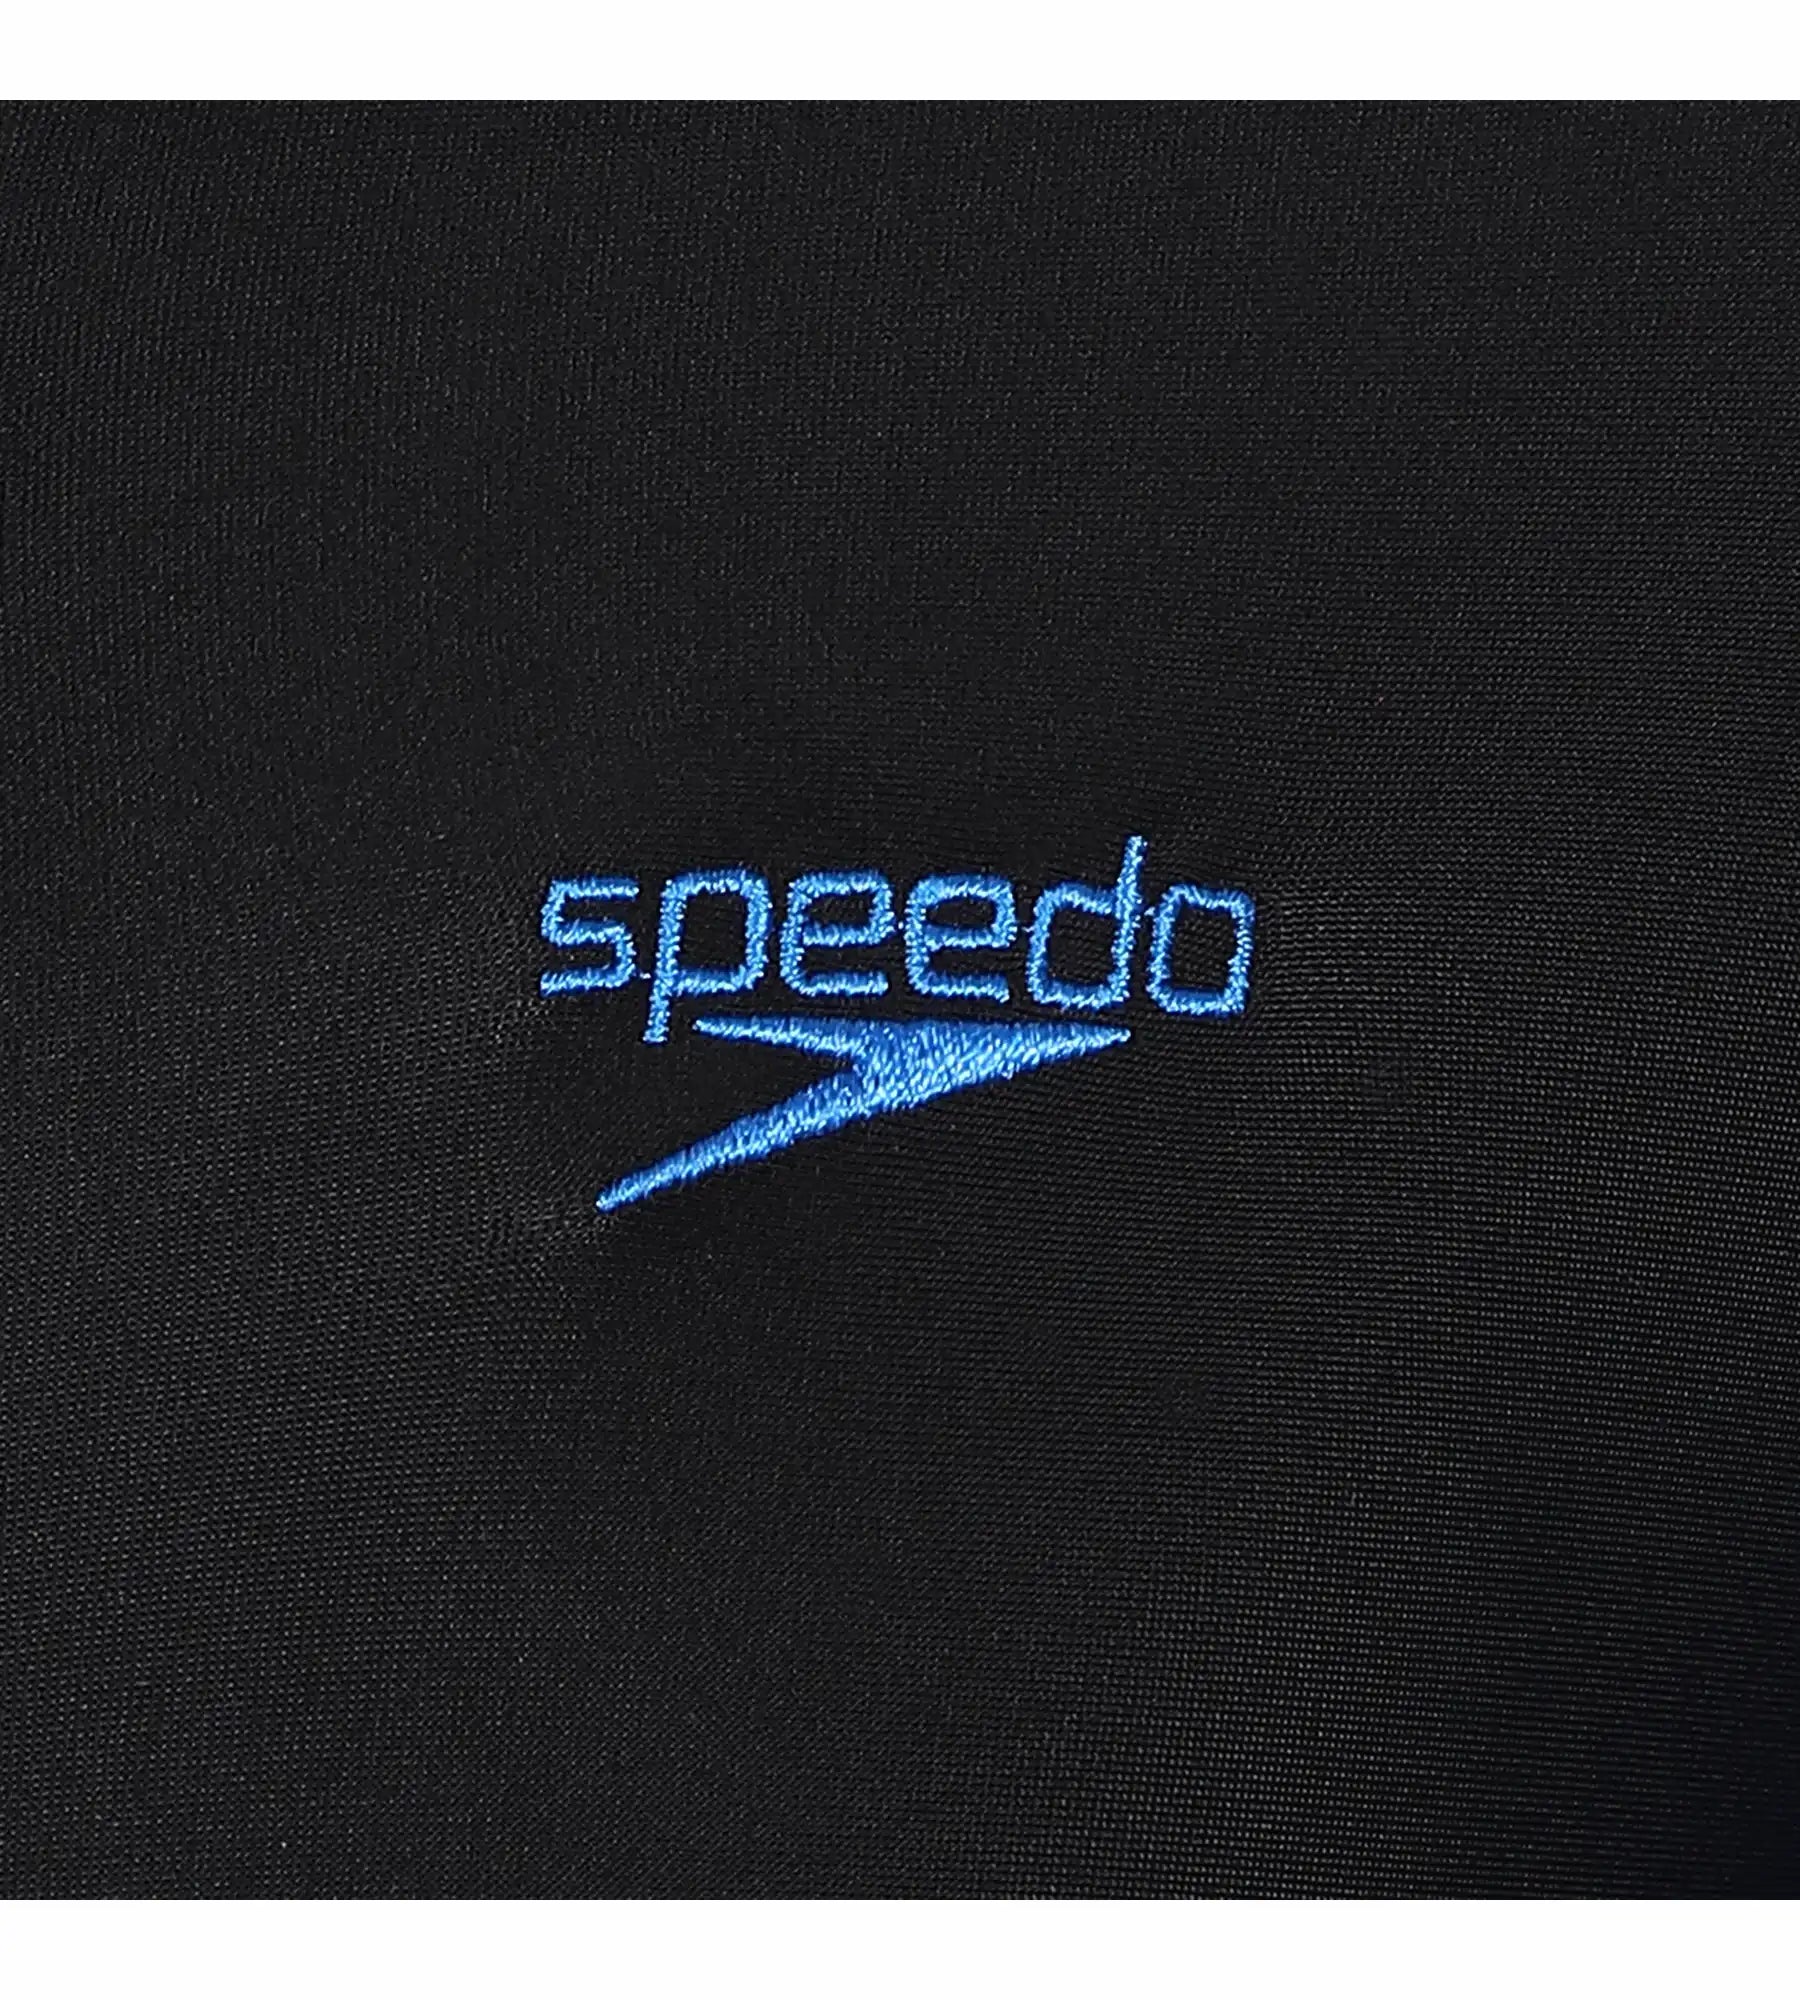 Buy Speedo Color Block All In One Suit Black-Bondi Blue Swimwear Online ...